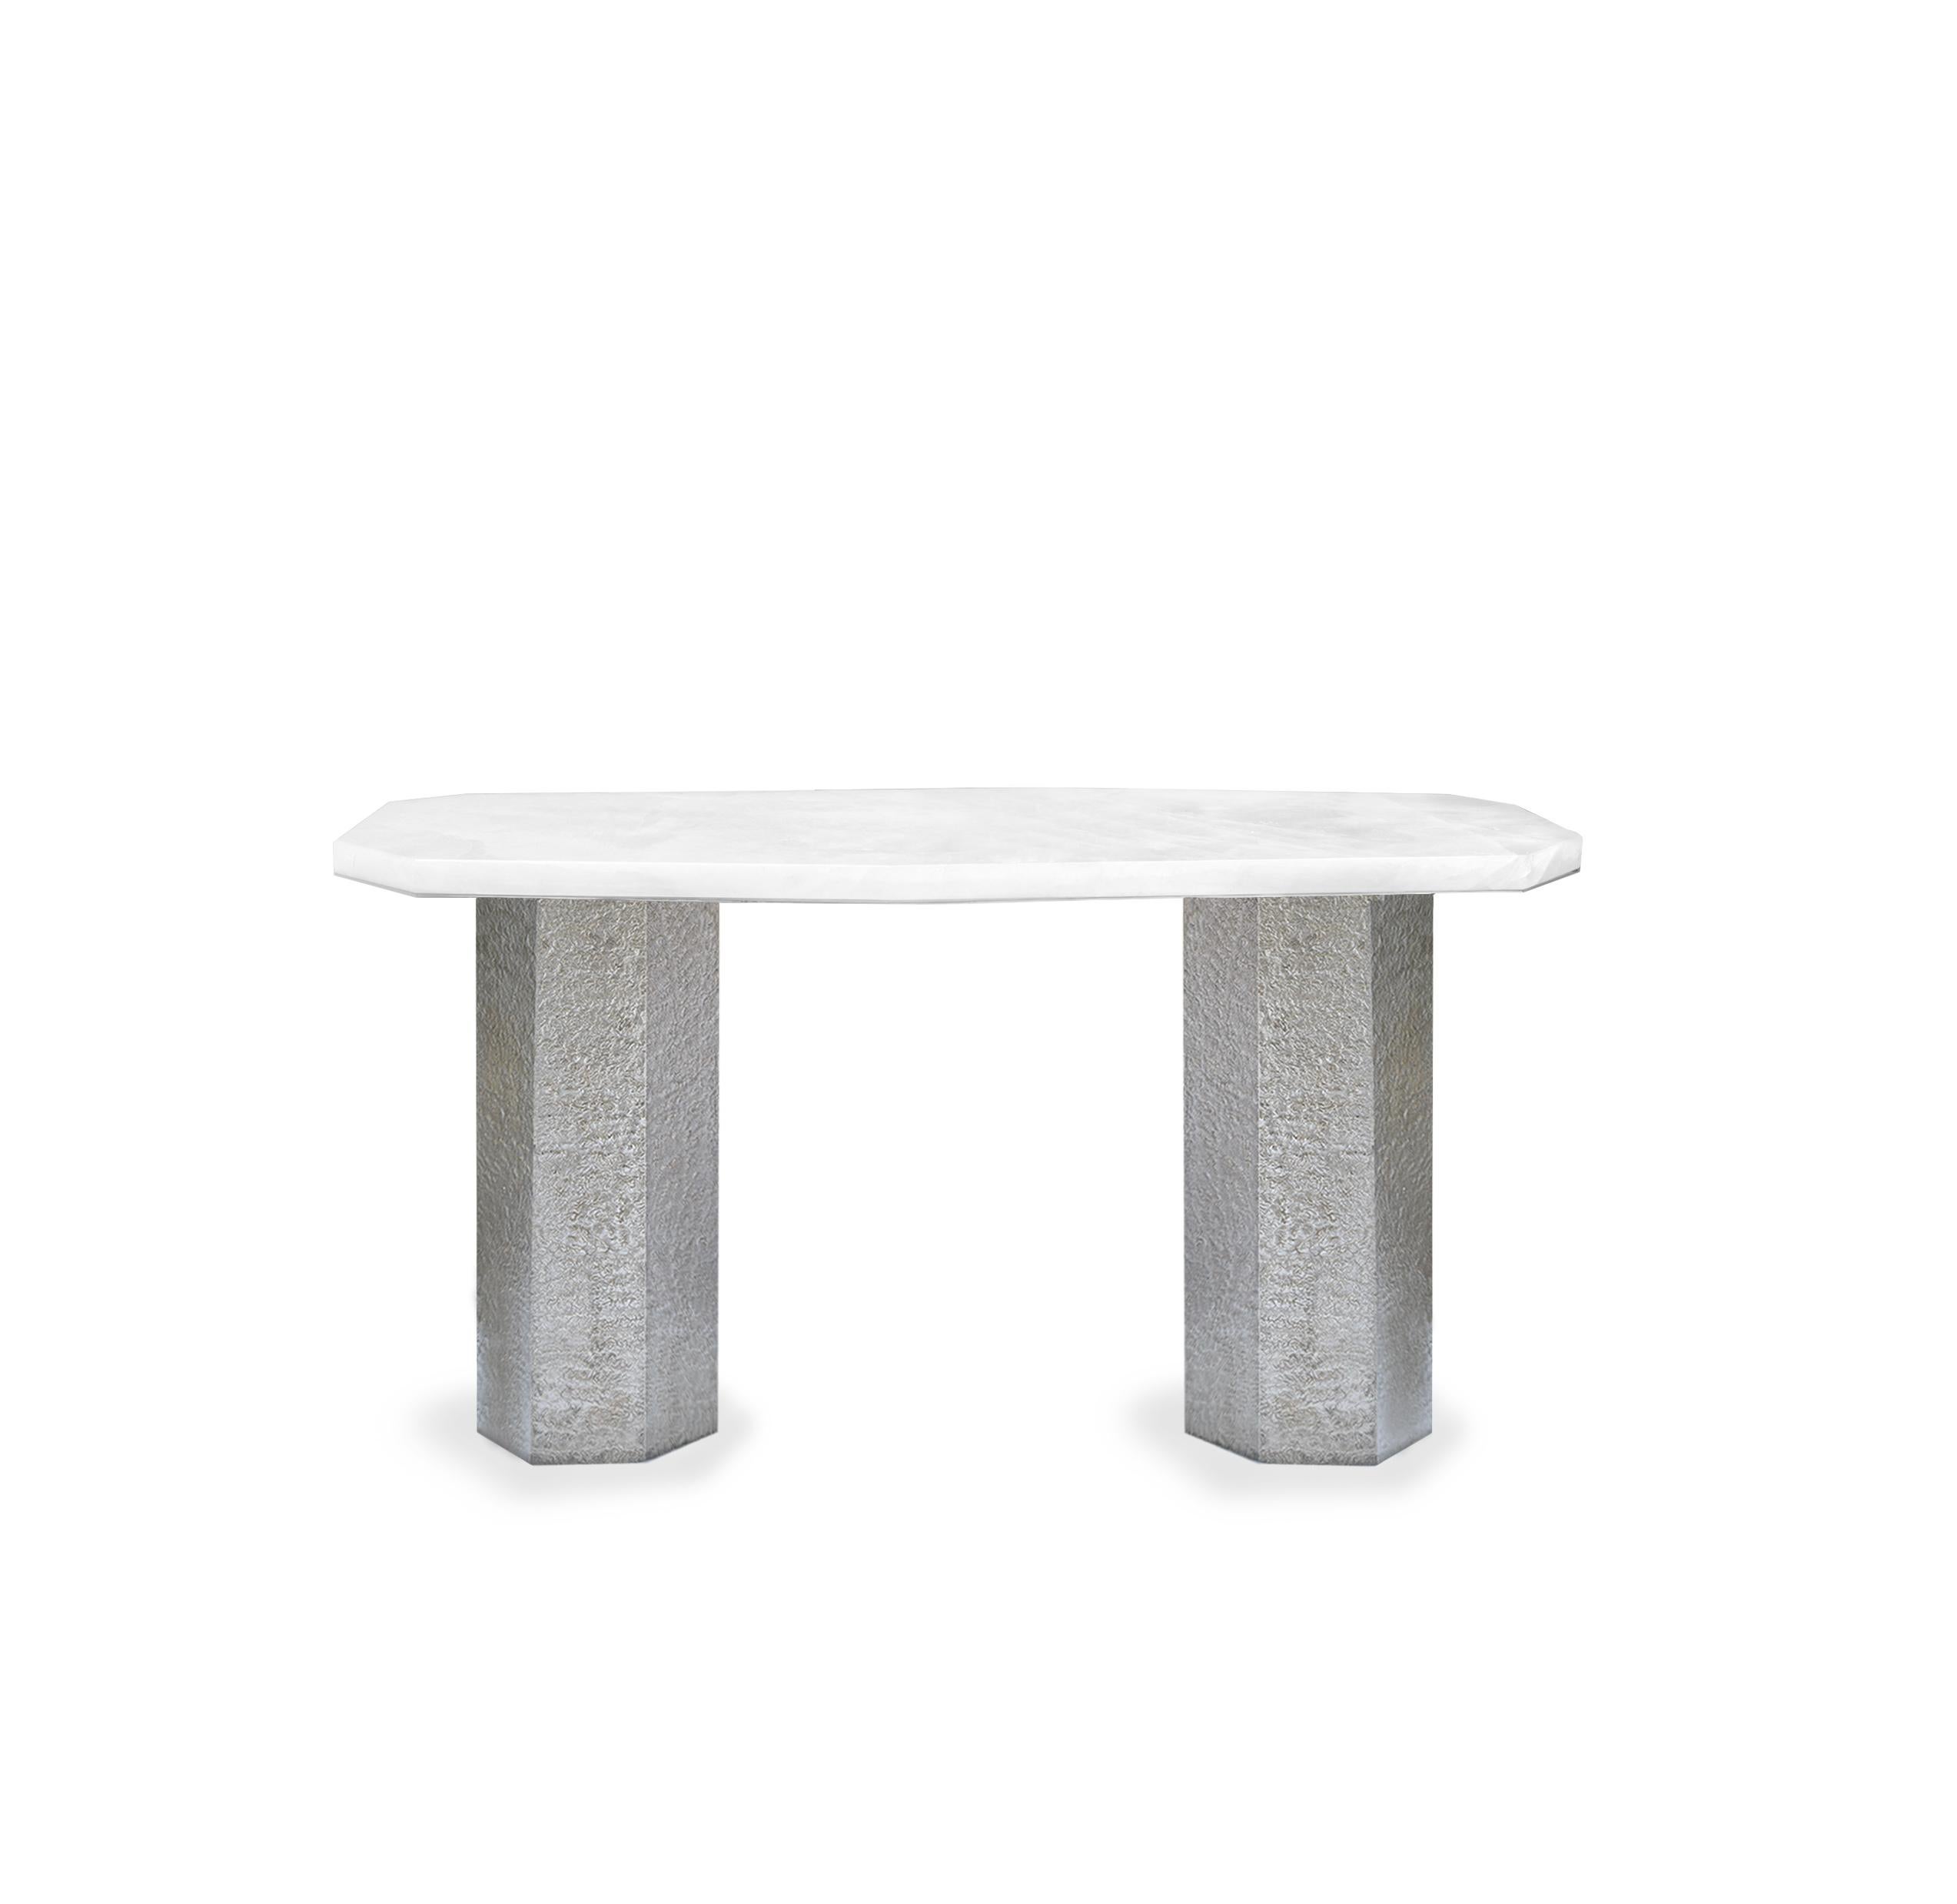 Table console en cristal de roche de forme élégante avec base en nickel martelé. Créé par Phoenix, NYC.
Taille personnalisée sur demande.